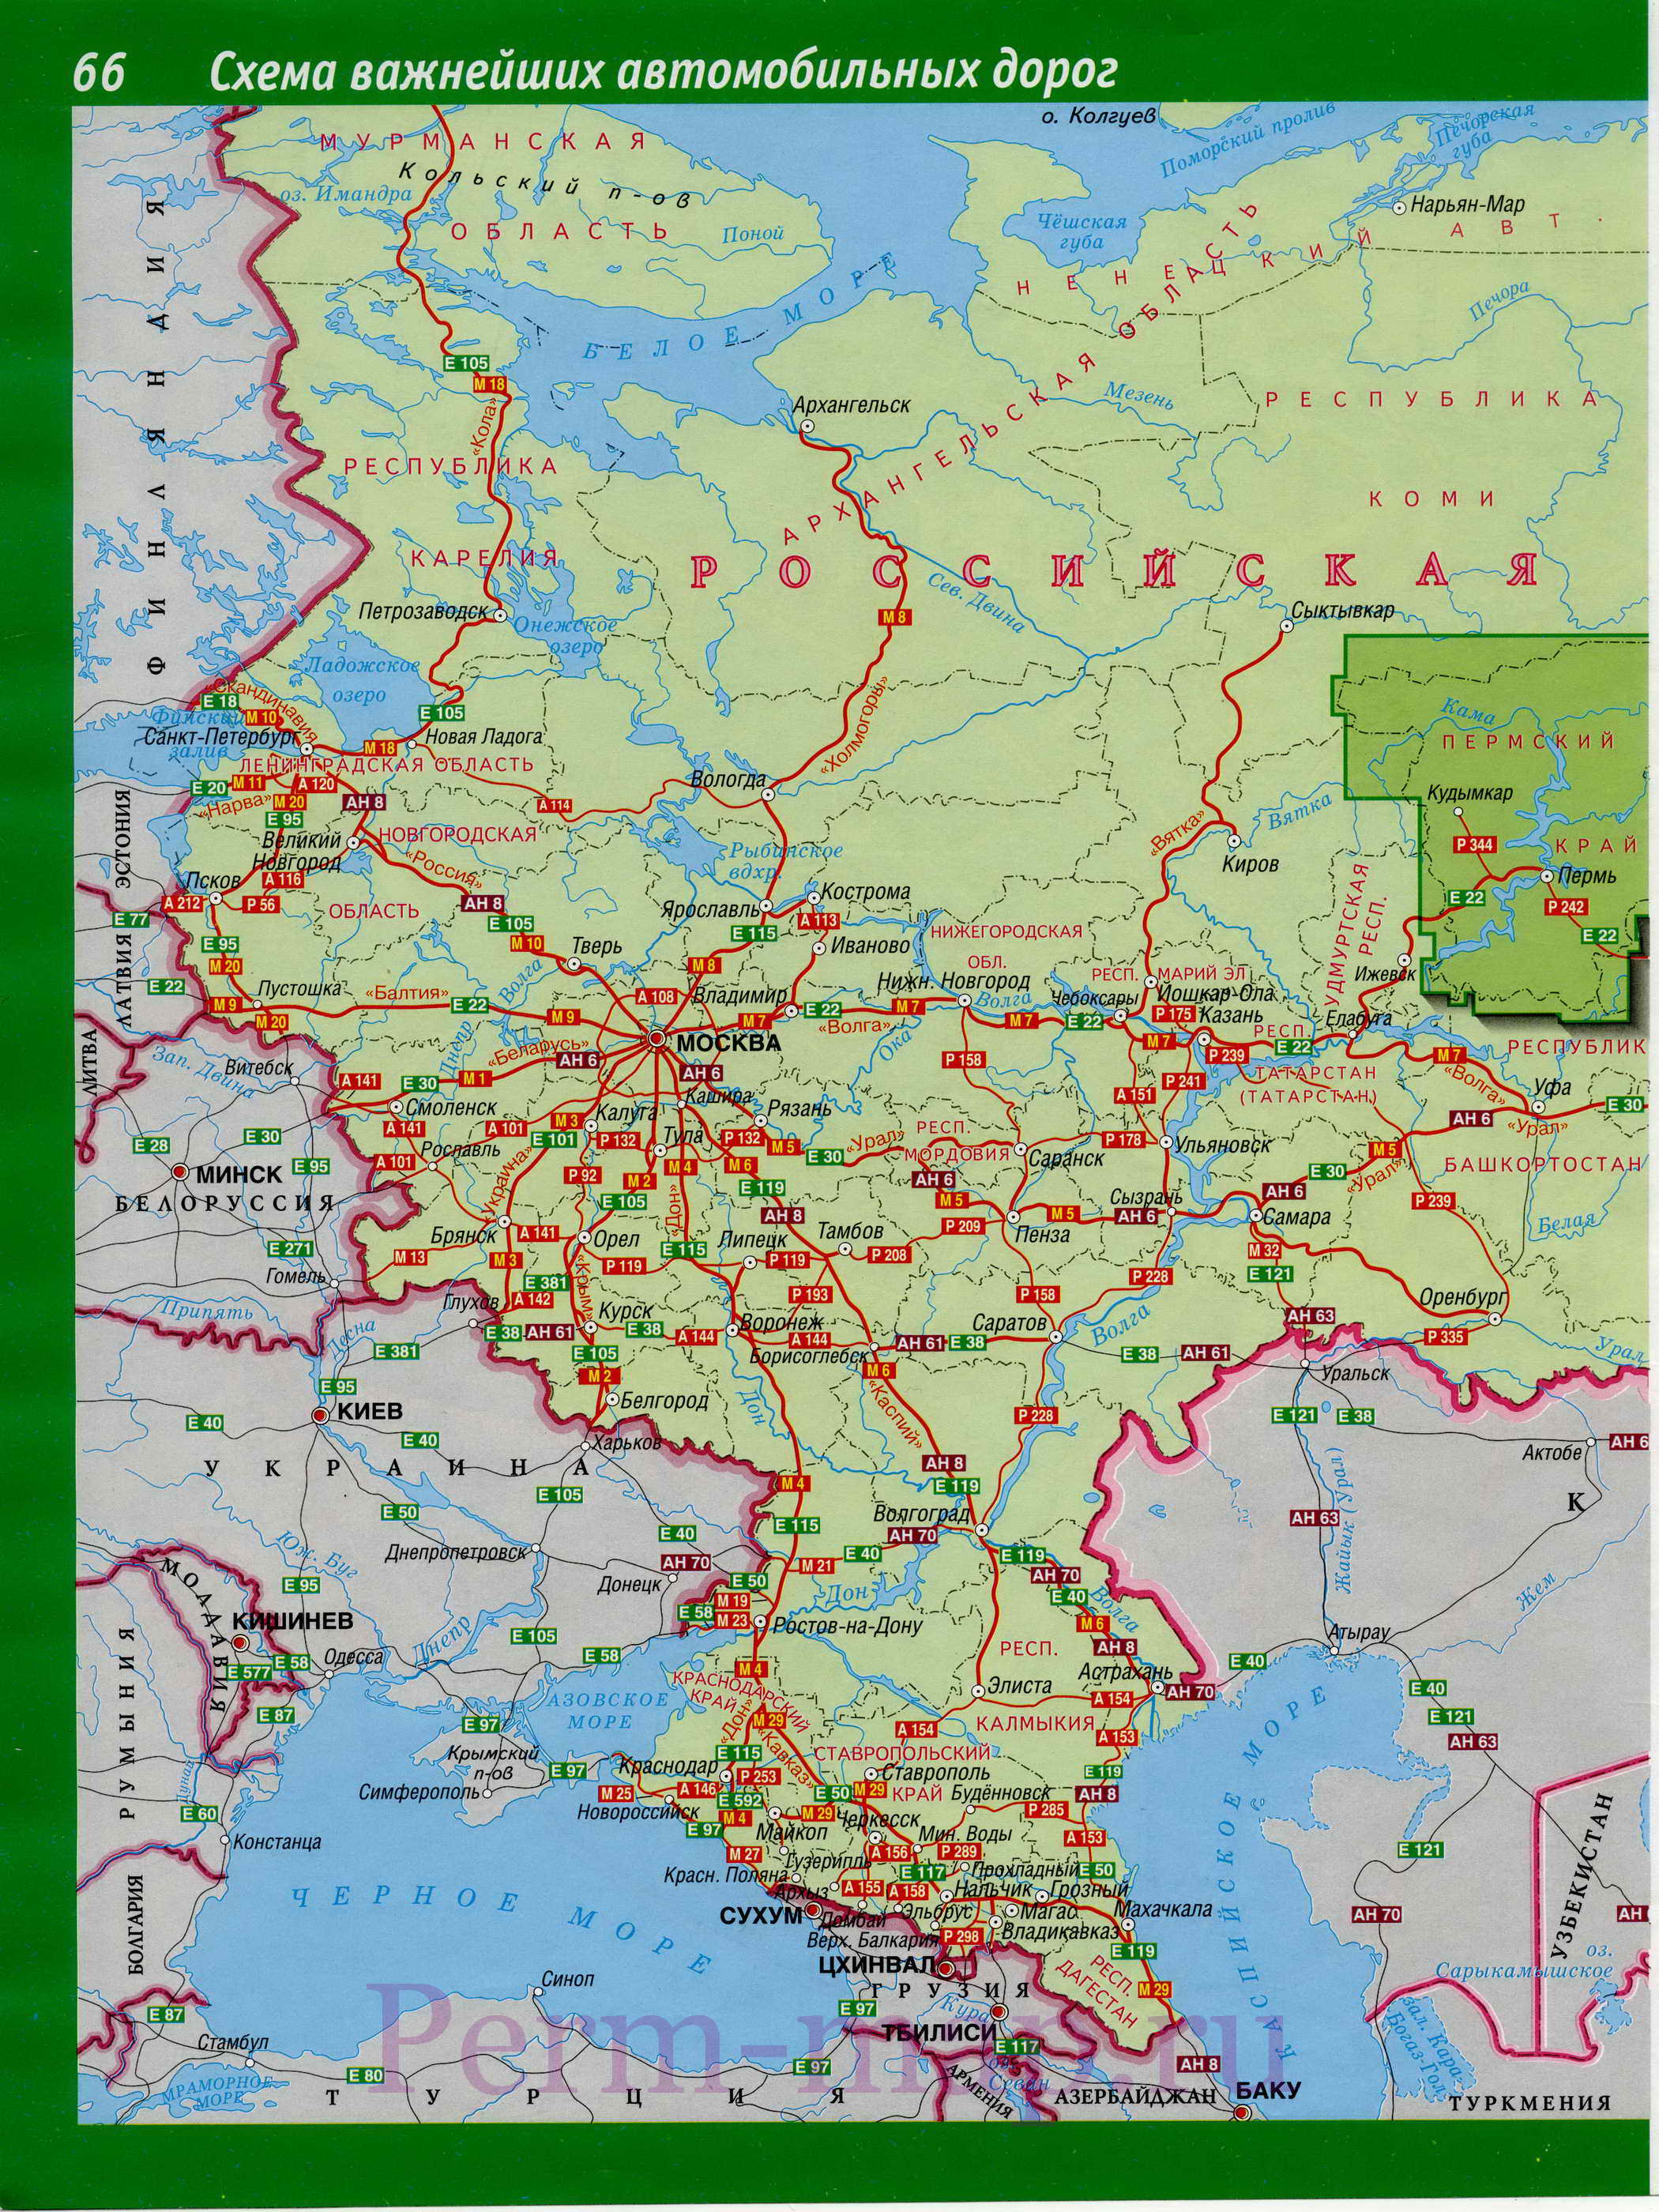  Карта схема важнейших автомобильных дорог России. Магистральные автомобильные дороги России, A0 - 